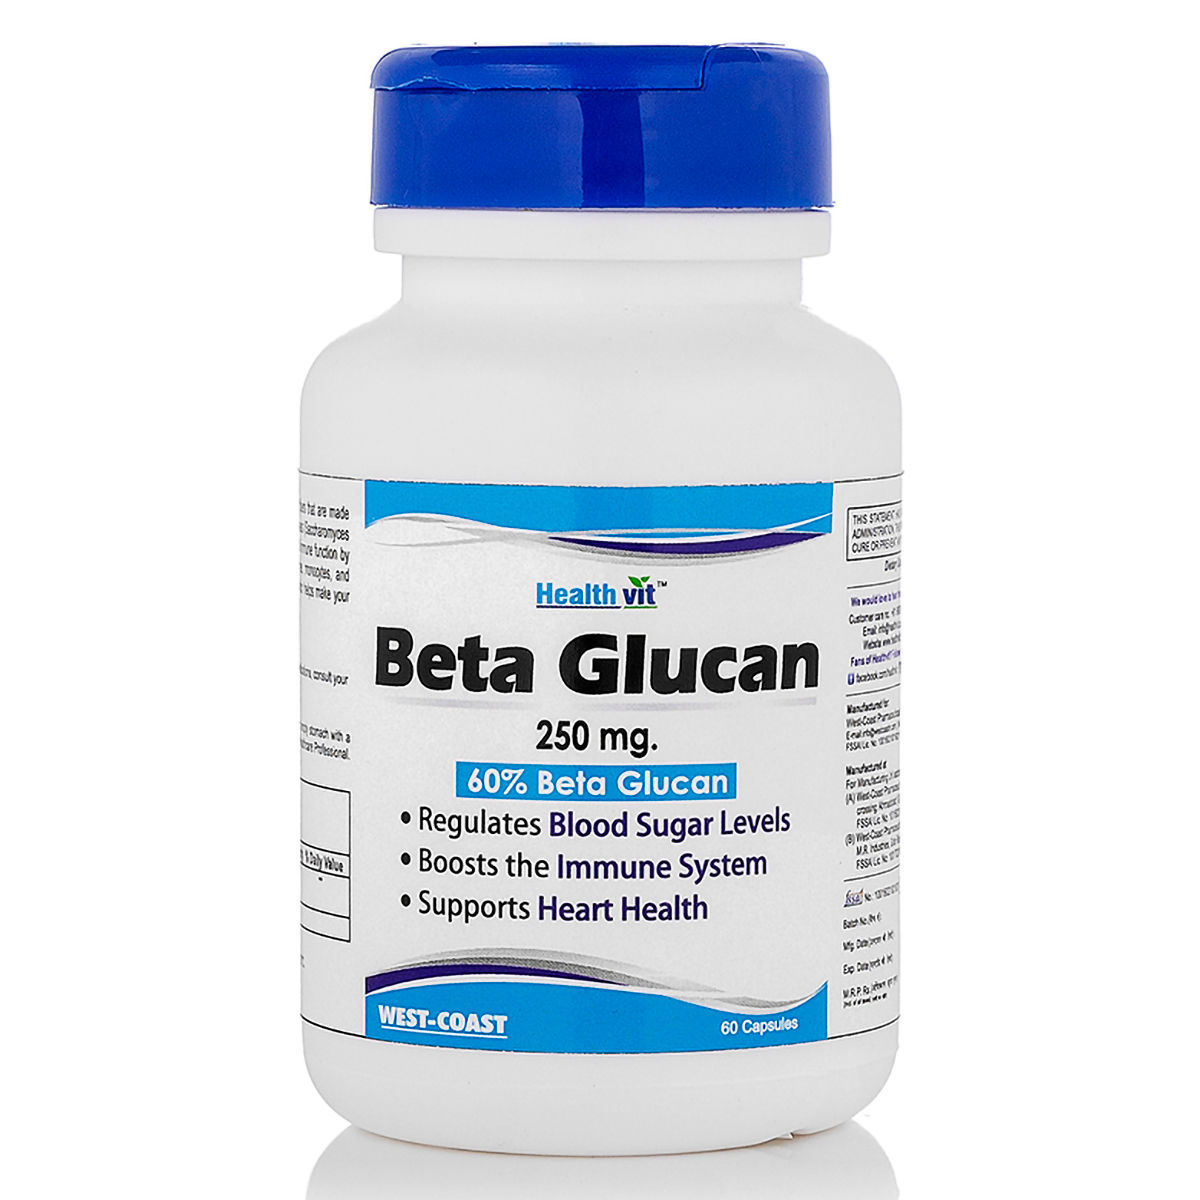 Buy Healthvit Beta Glucan 250 mg, 60 Capsules Online